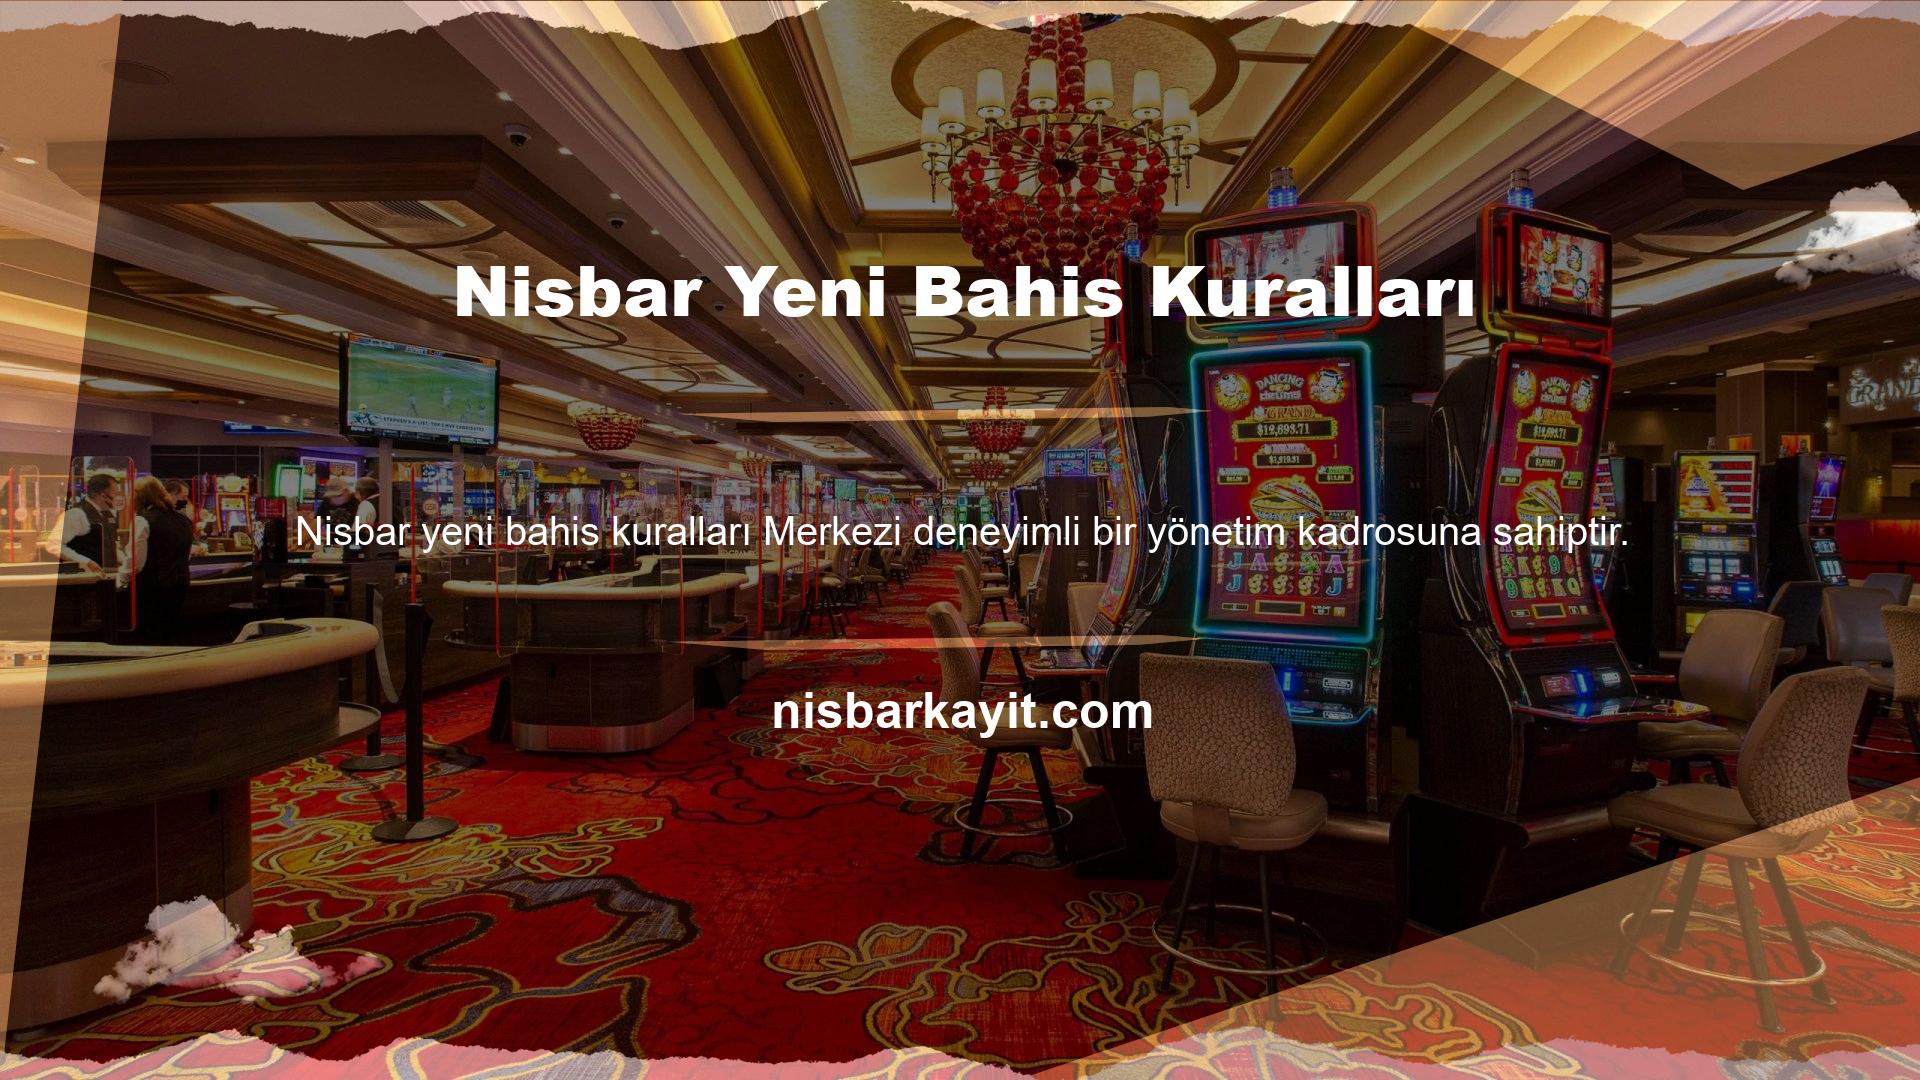 Bu nedenle ülkemizde Türkçe dil desteği sayesinde popülaritesi giderek artan Nisbar canlı bahis sitesi lisansı ile yasal ve sertifikalı bir hizmet sunmaktadır